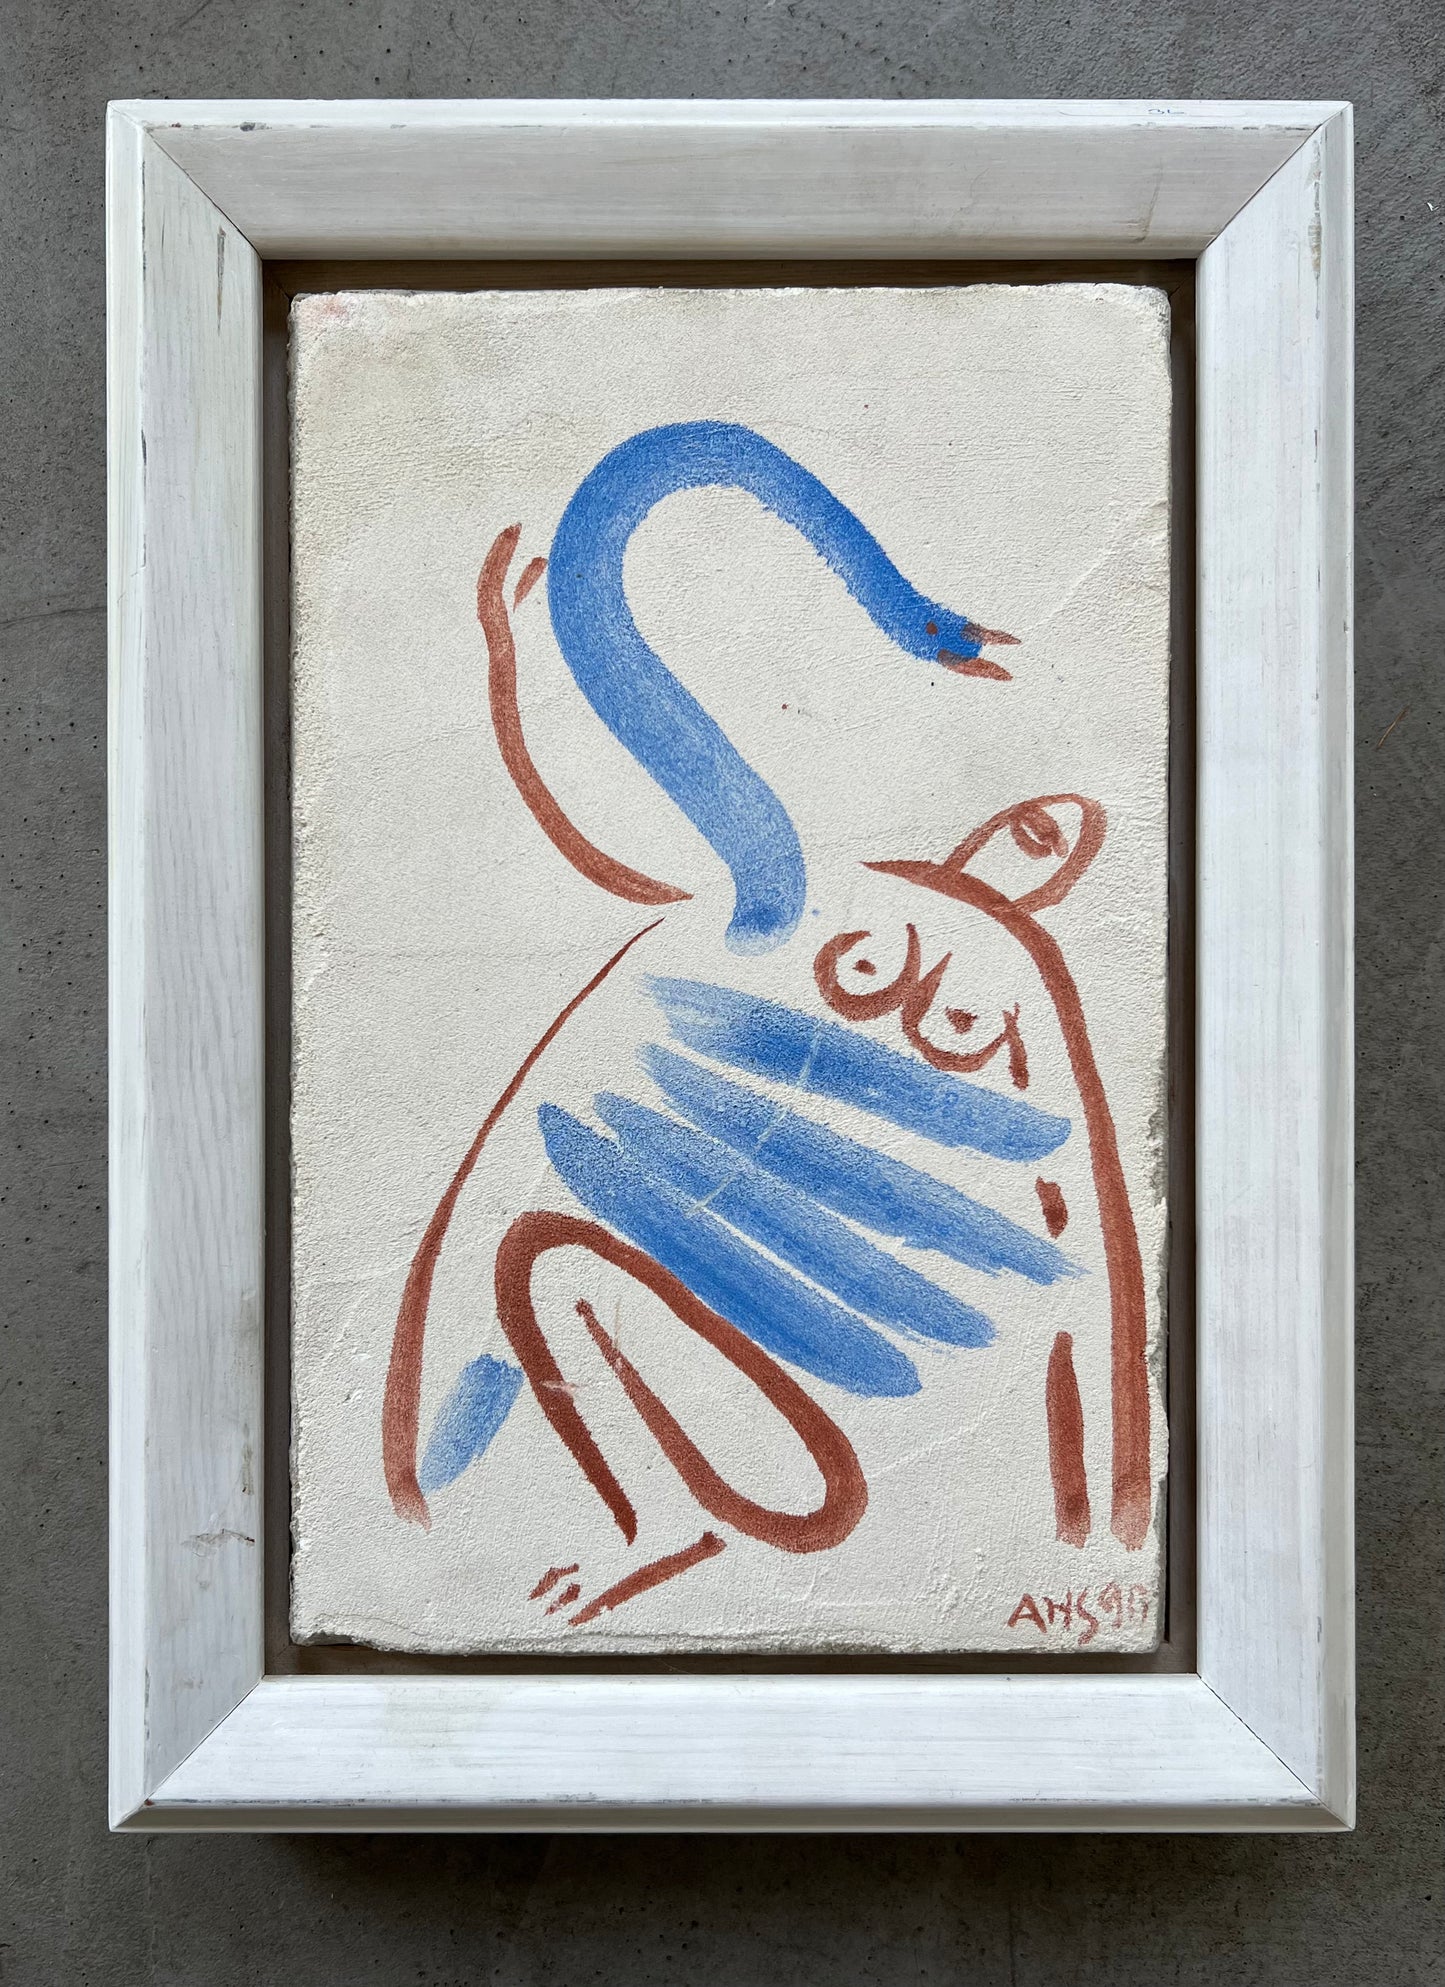 Arne Haugen Sørensen. "Leda and the Swan", 1990